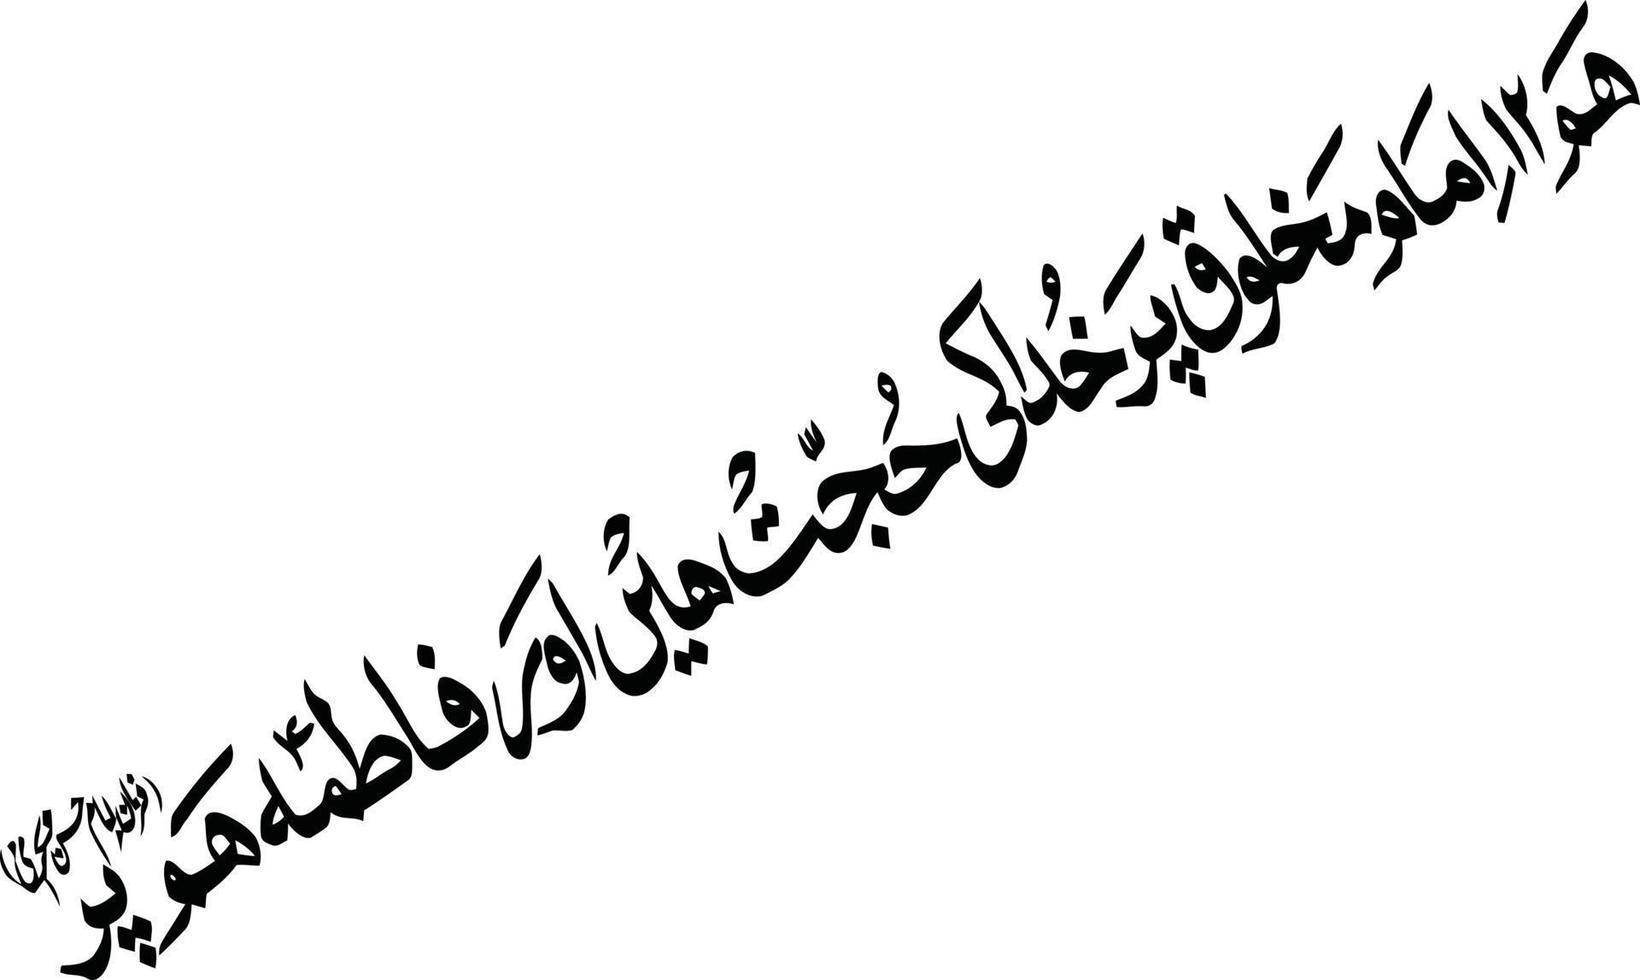 arbi islamische urdu kalligraphie kostenloser vektor